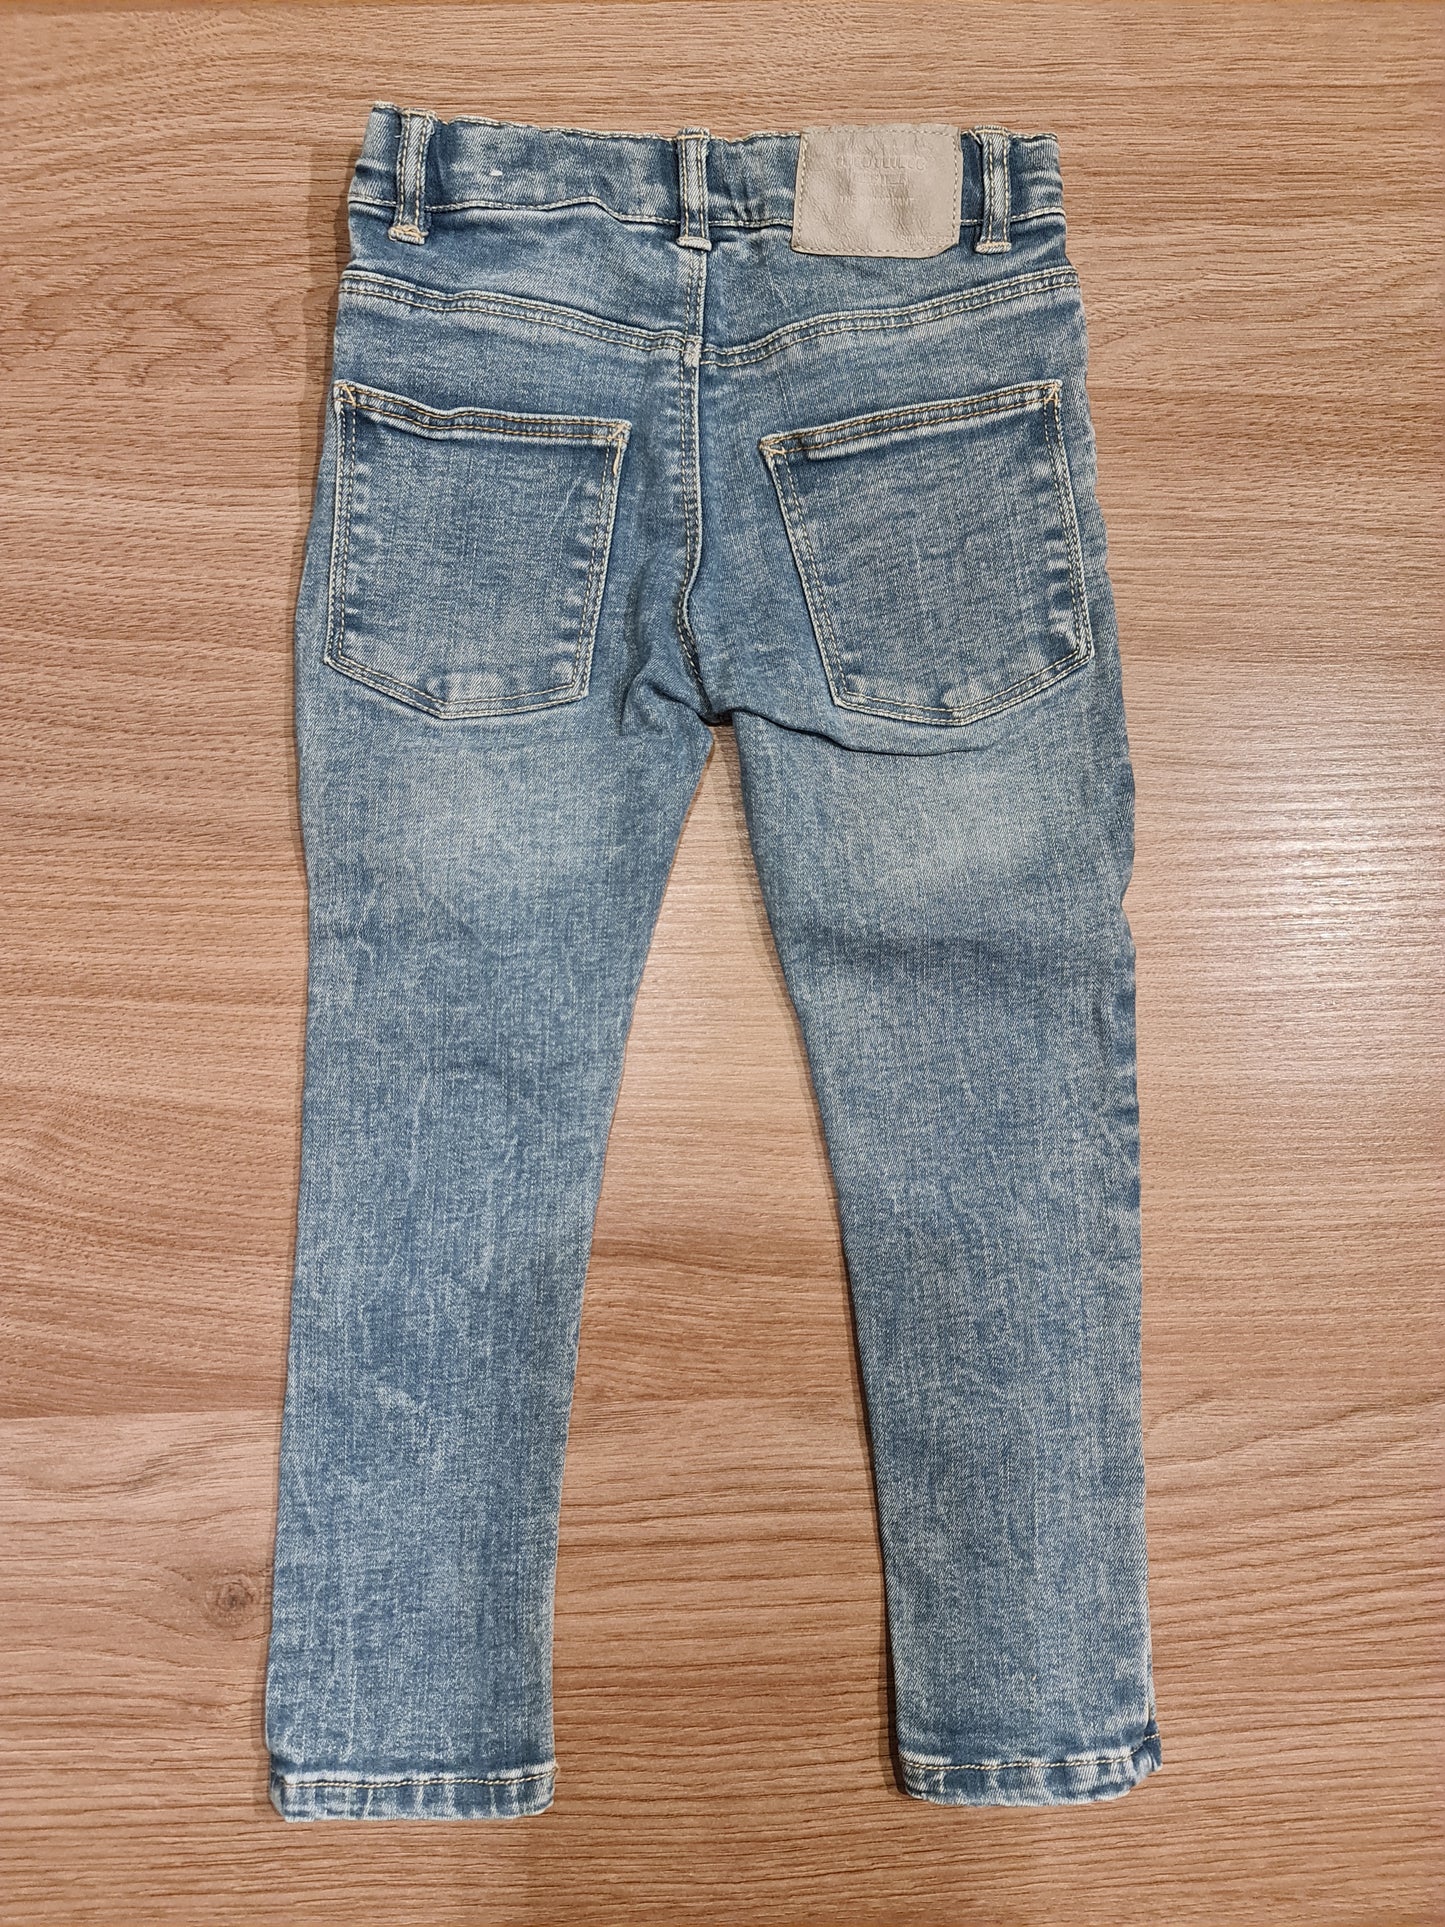 Jeansbroek 104 Zara